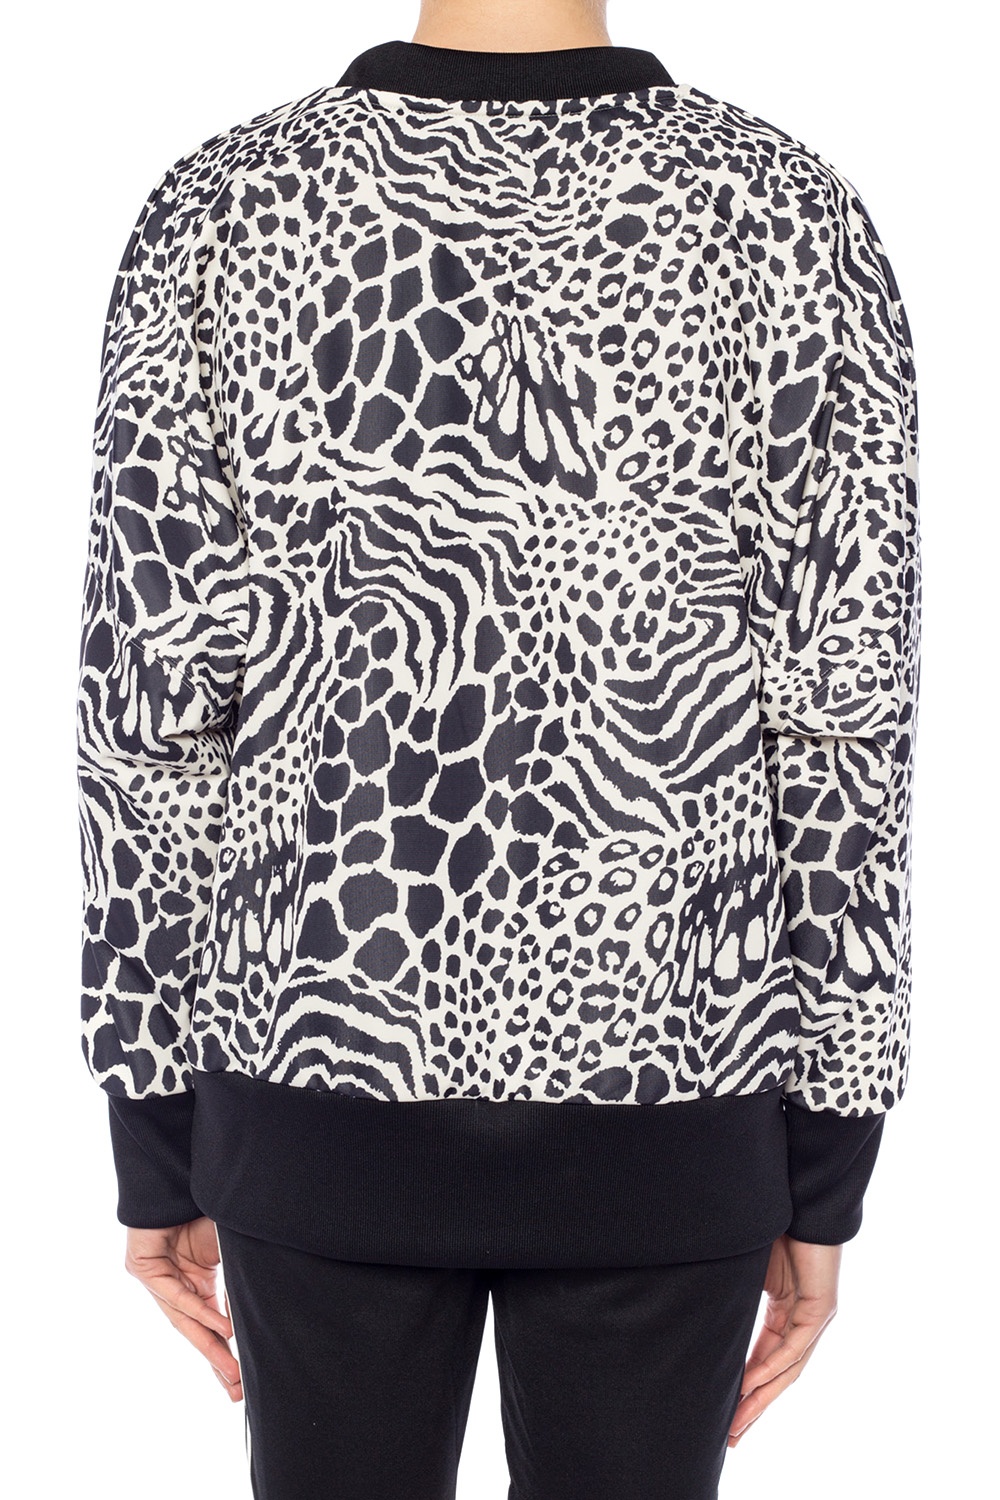 adidas leopard sweatshirt